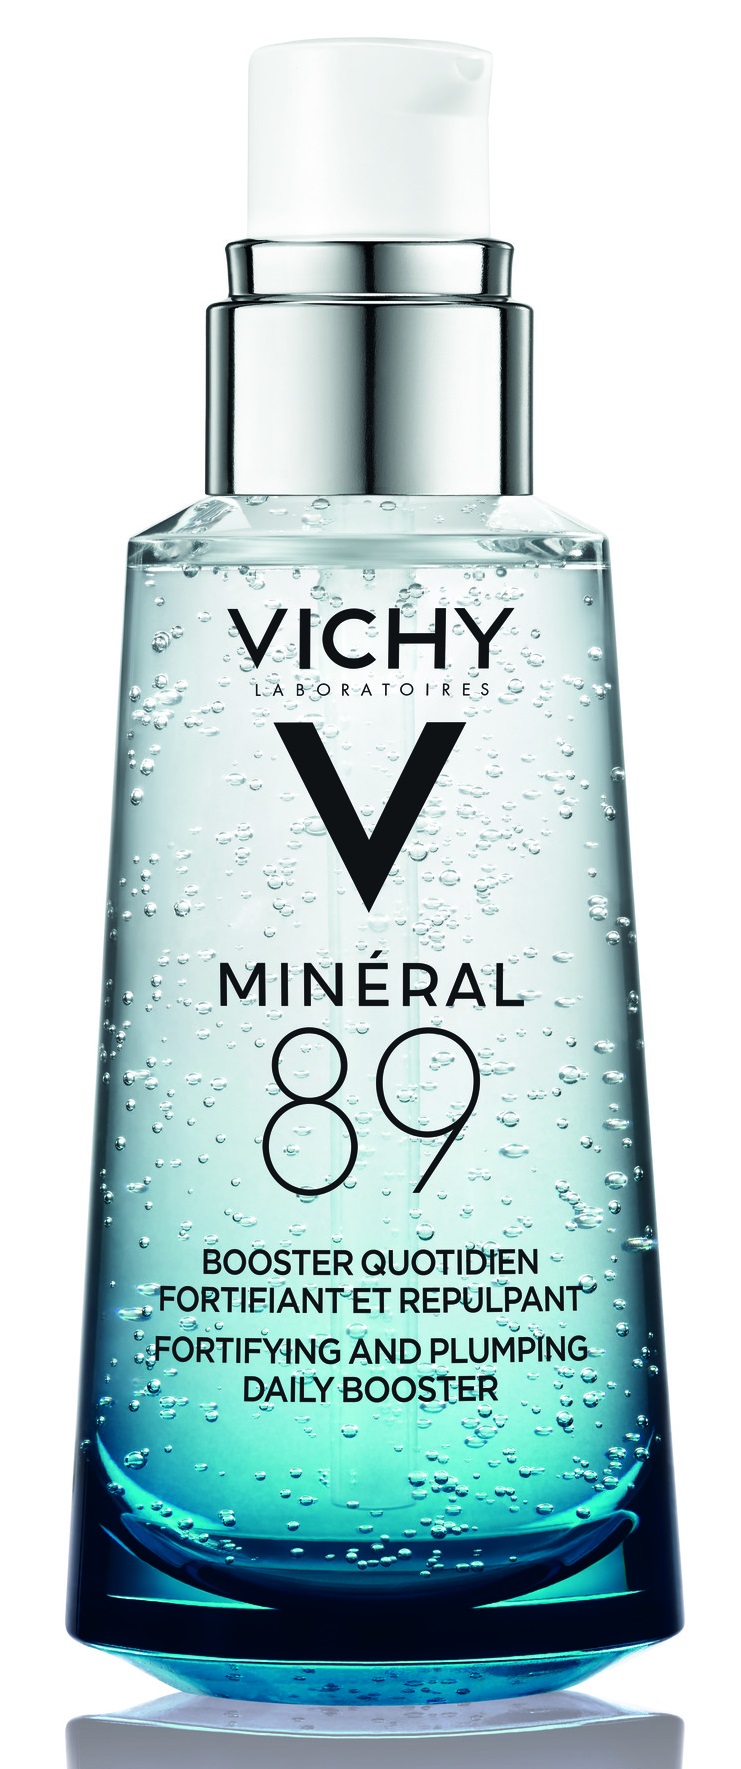 VICHY Minéral 89 bőrerősítő és teltséget adó booster 50 ml